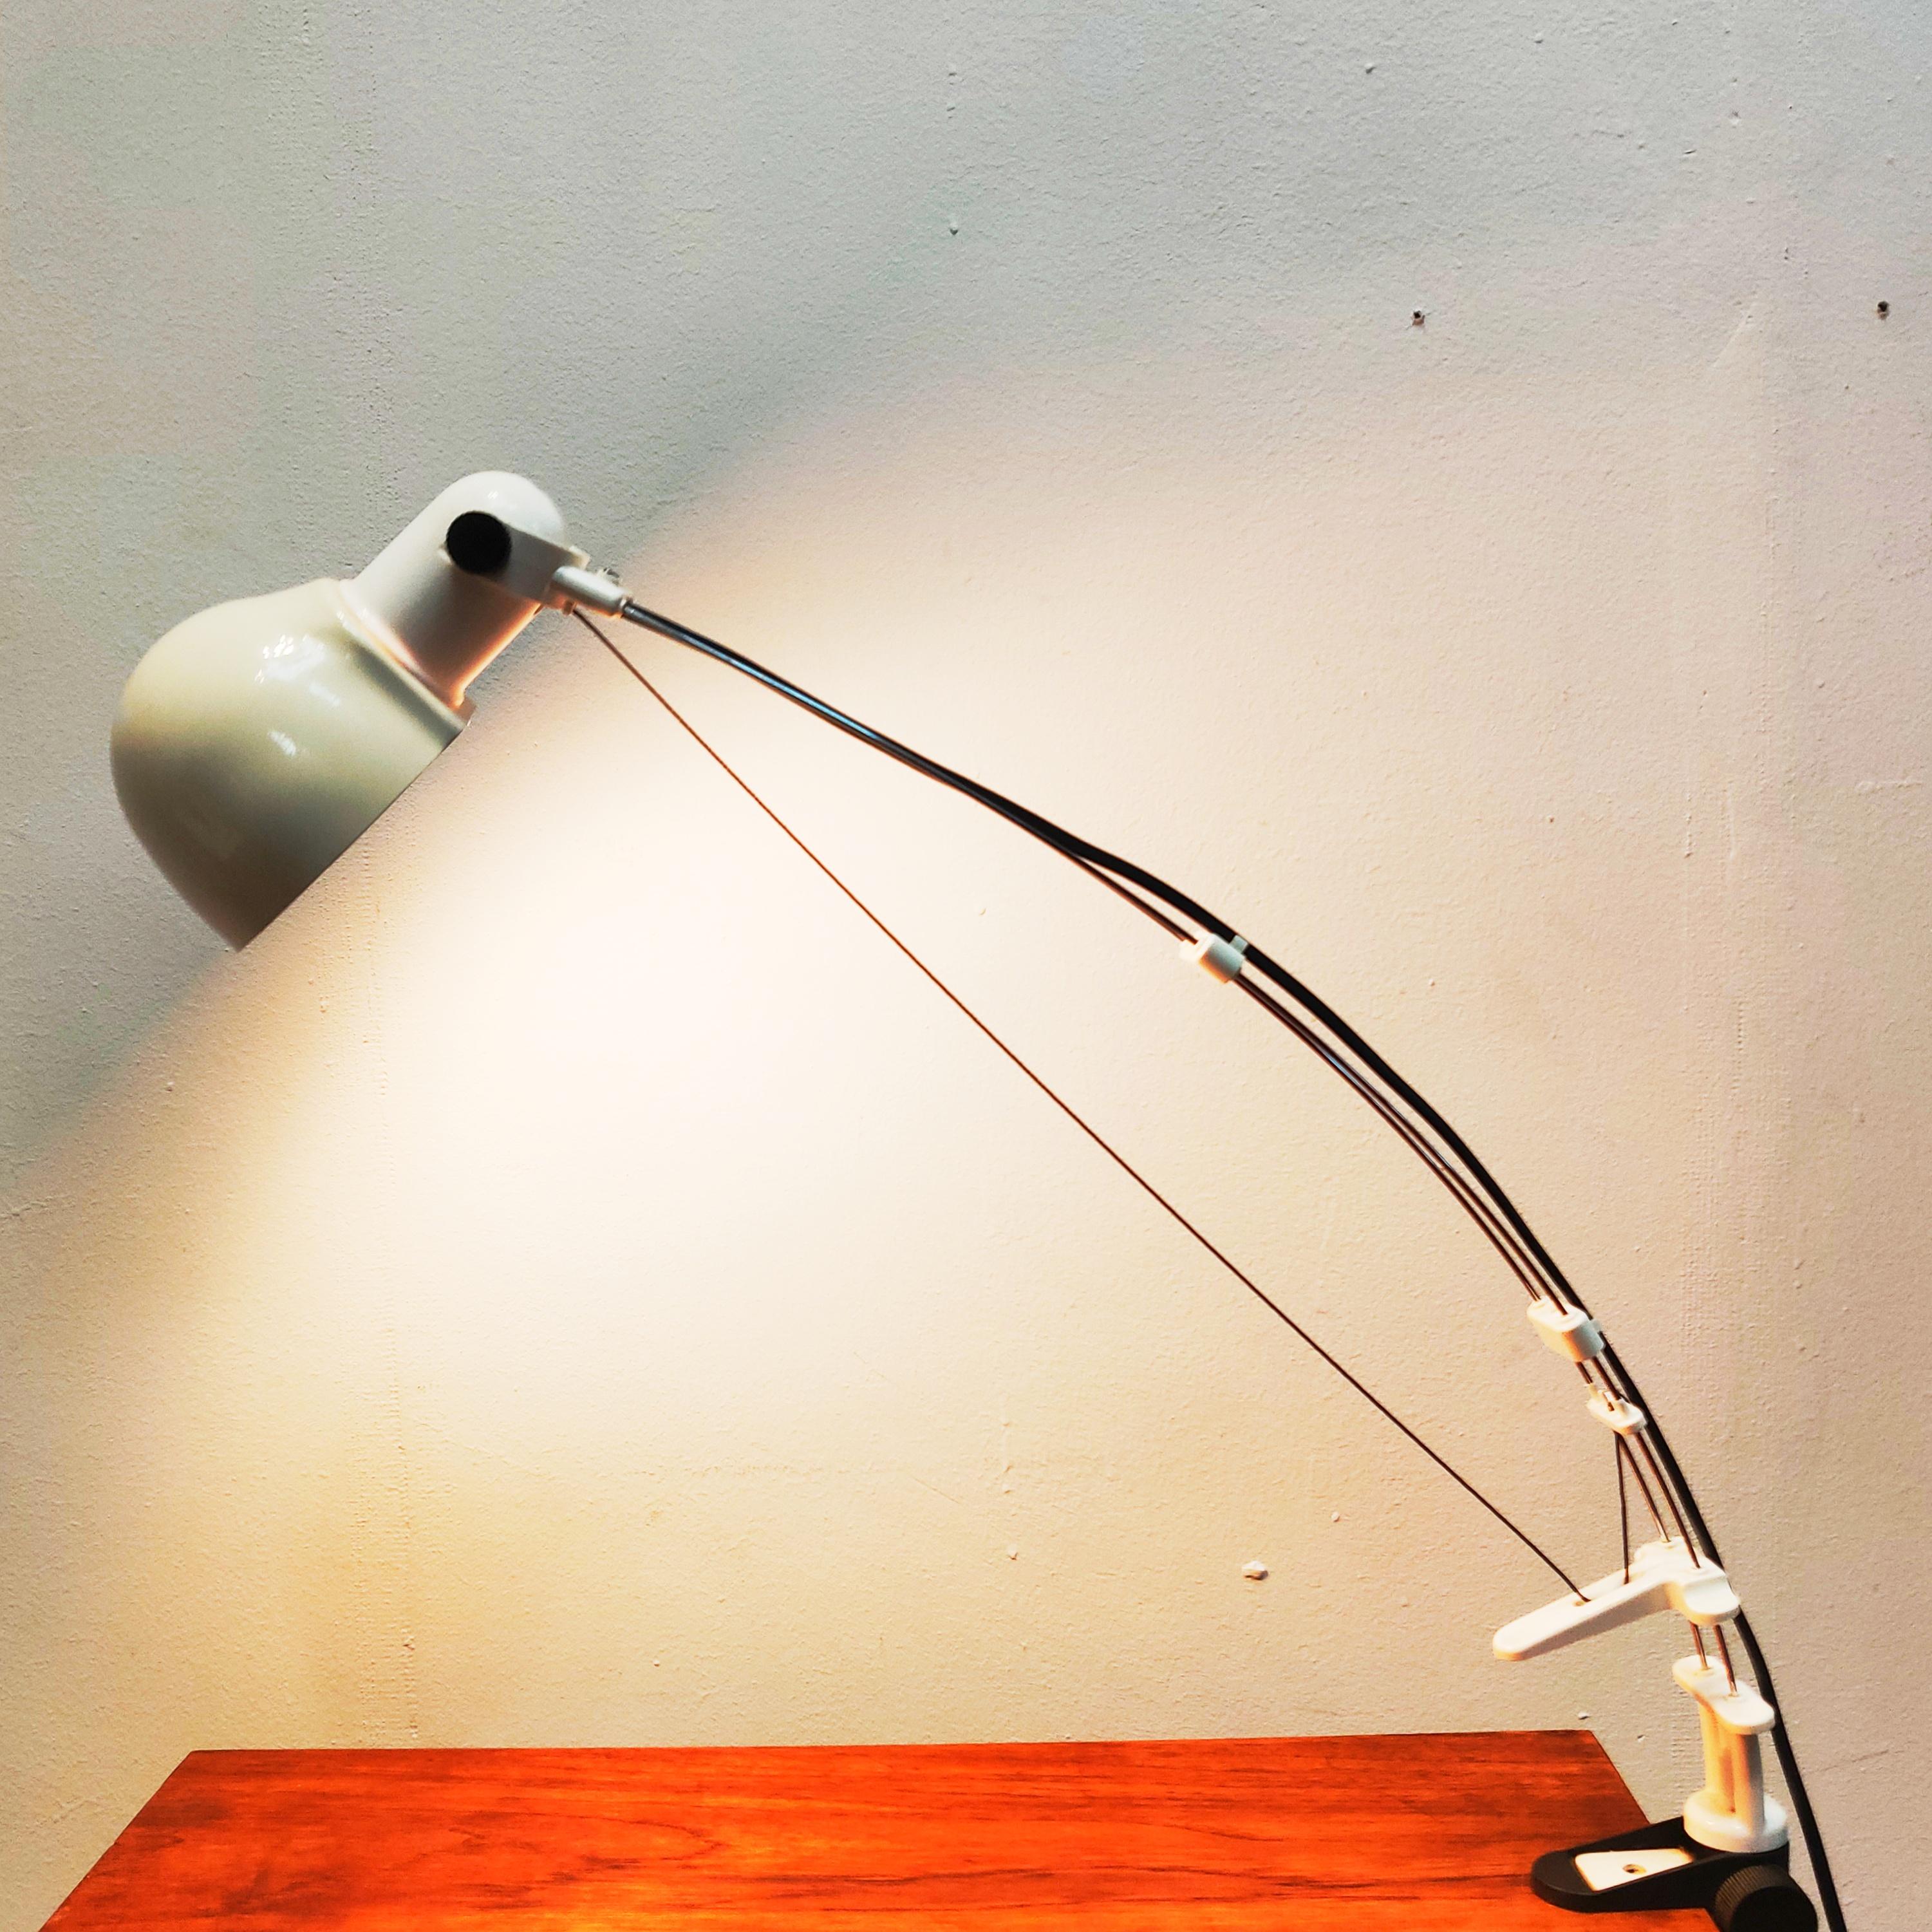 Lampe à pince de bureau Flex Wire, années 1970.
Lampe de bureau sculpturale caractéristique dont la hauteur est réglable en tirant ou en étirant le fil, l'abat-jour est réglable et la lampe peut pivoter. La lampe est dotée d'une pince de fixation